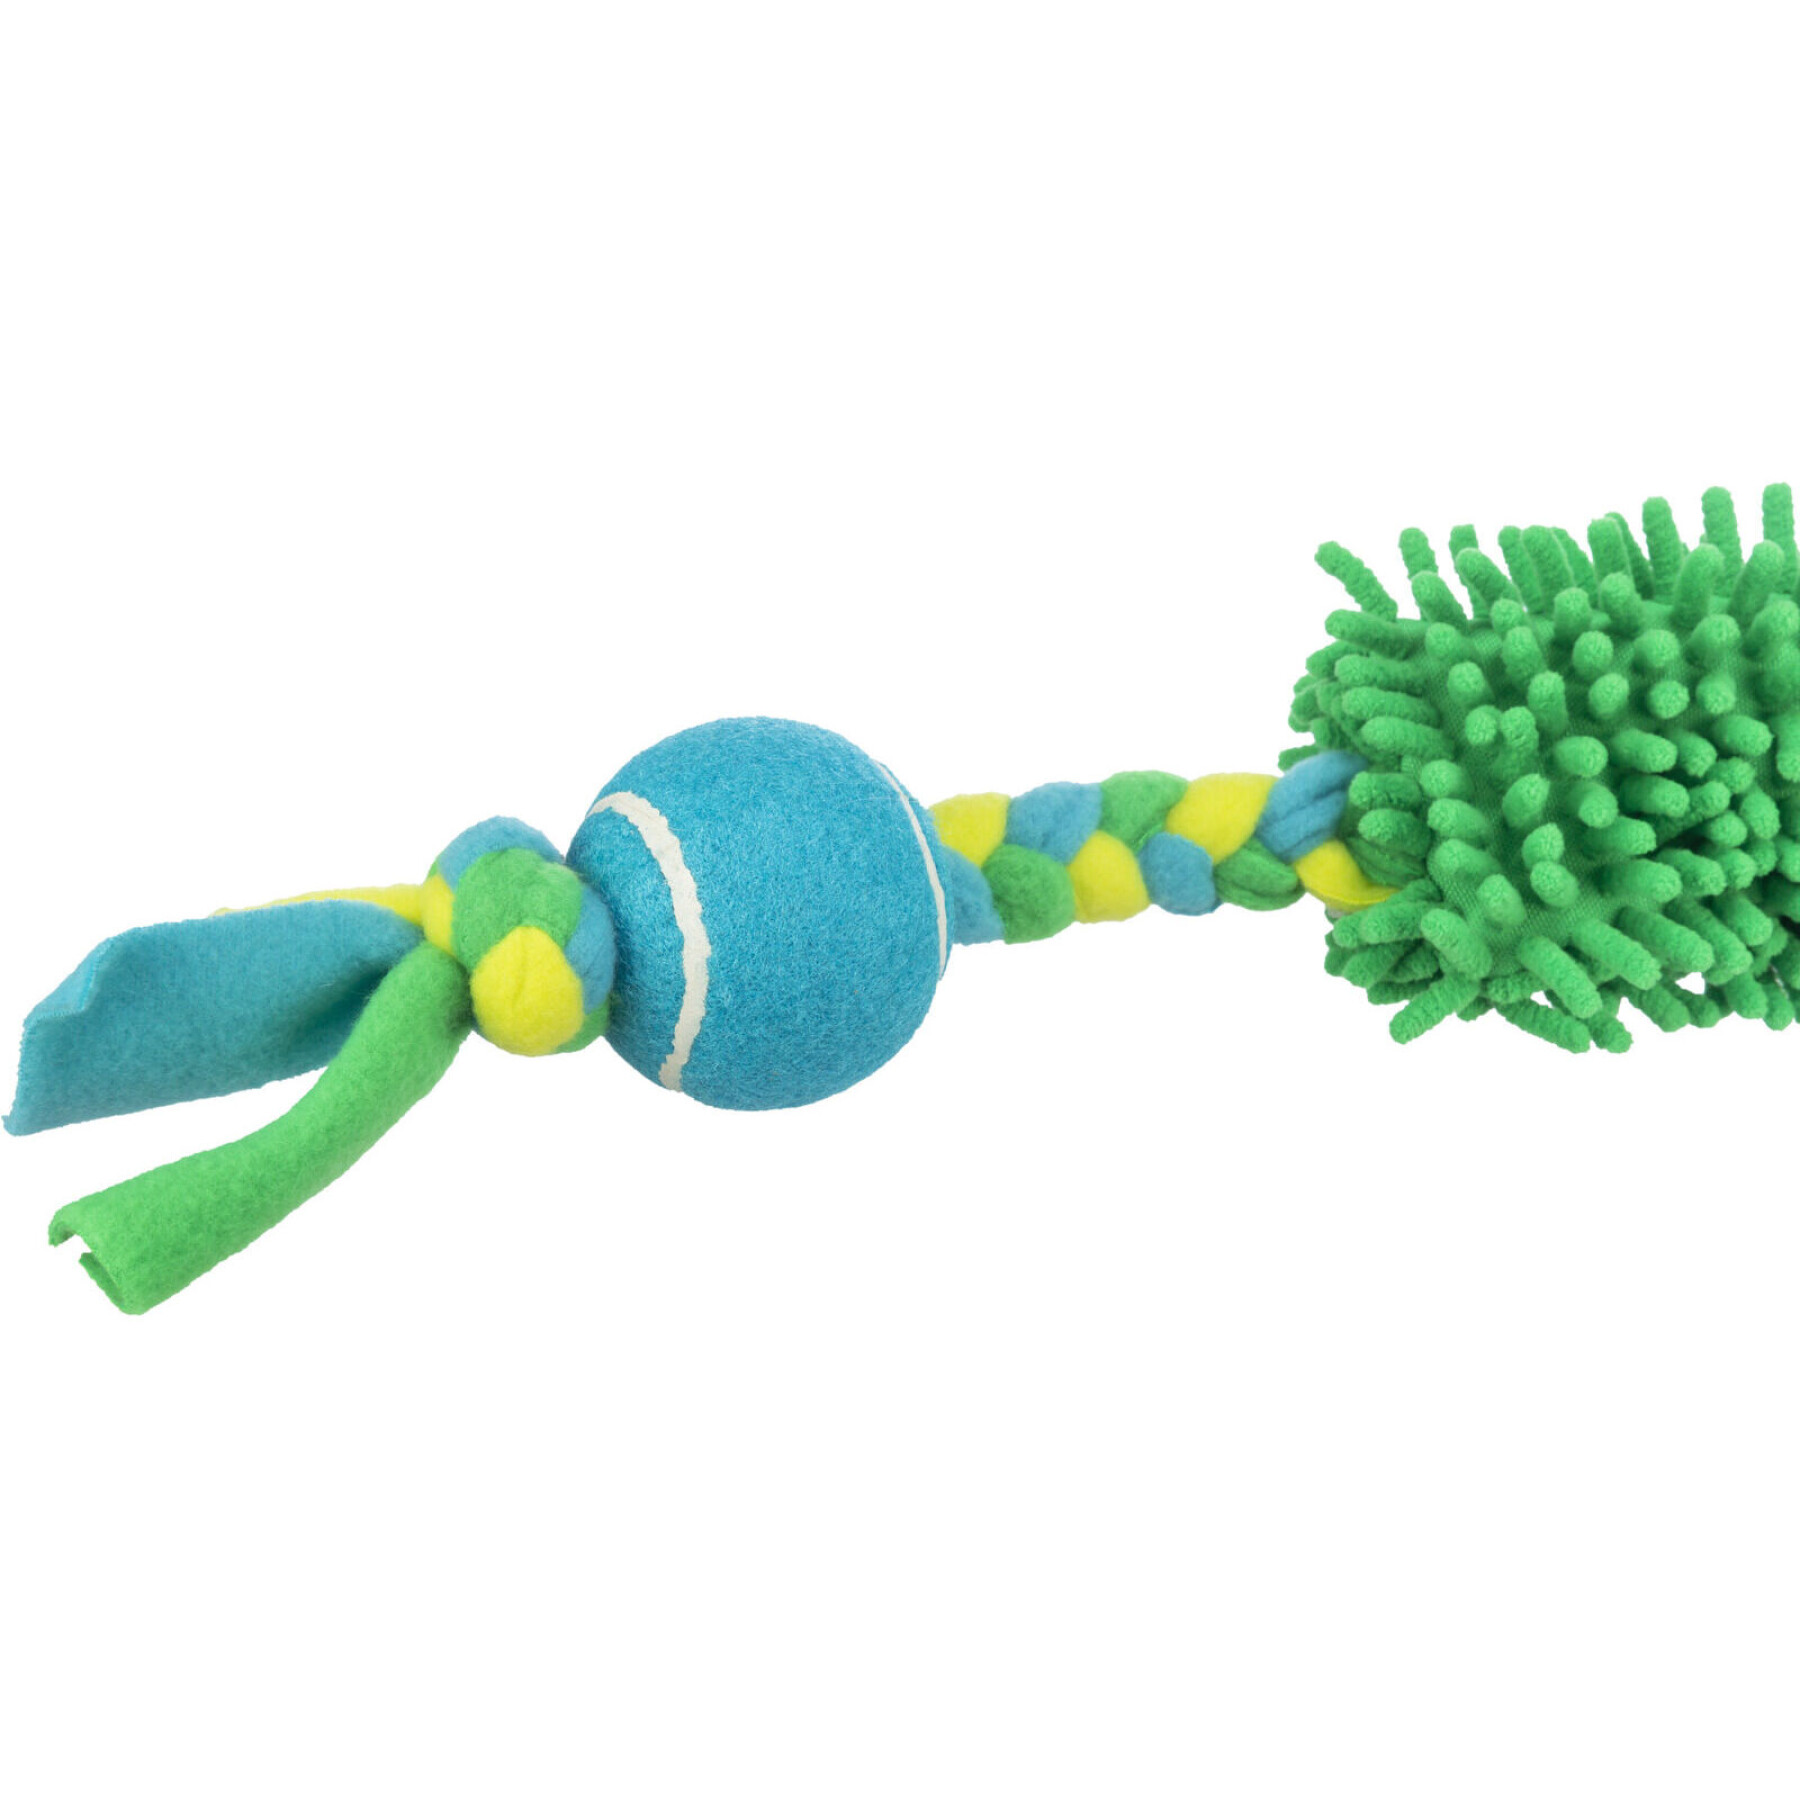 Brinquedo para cães com cordão elástico para puxar com bola de ténis Trixie (x2)